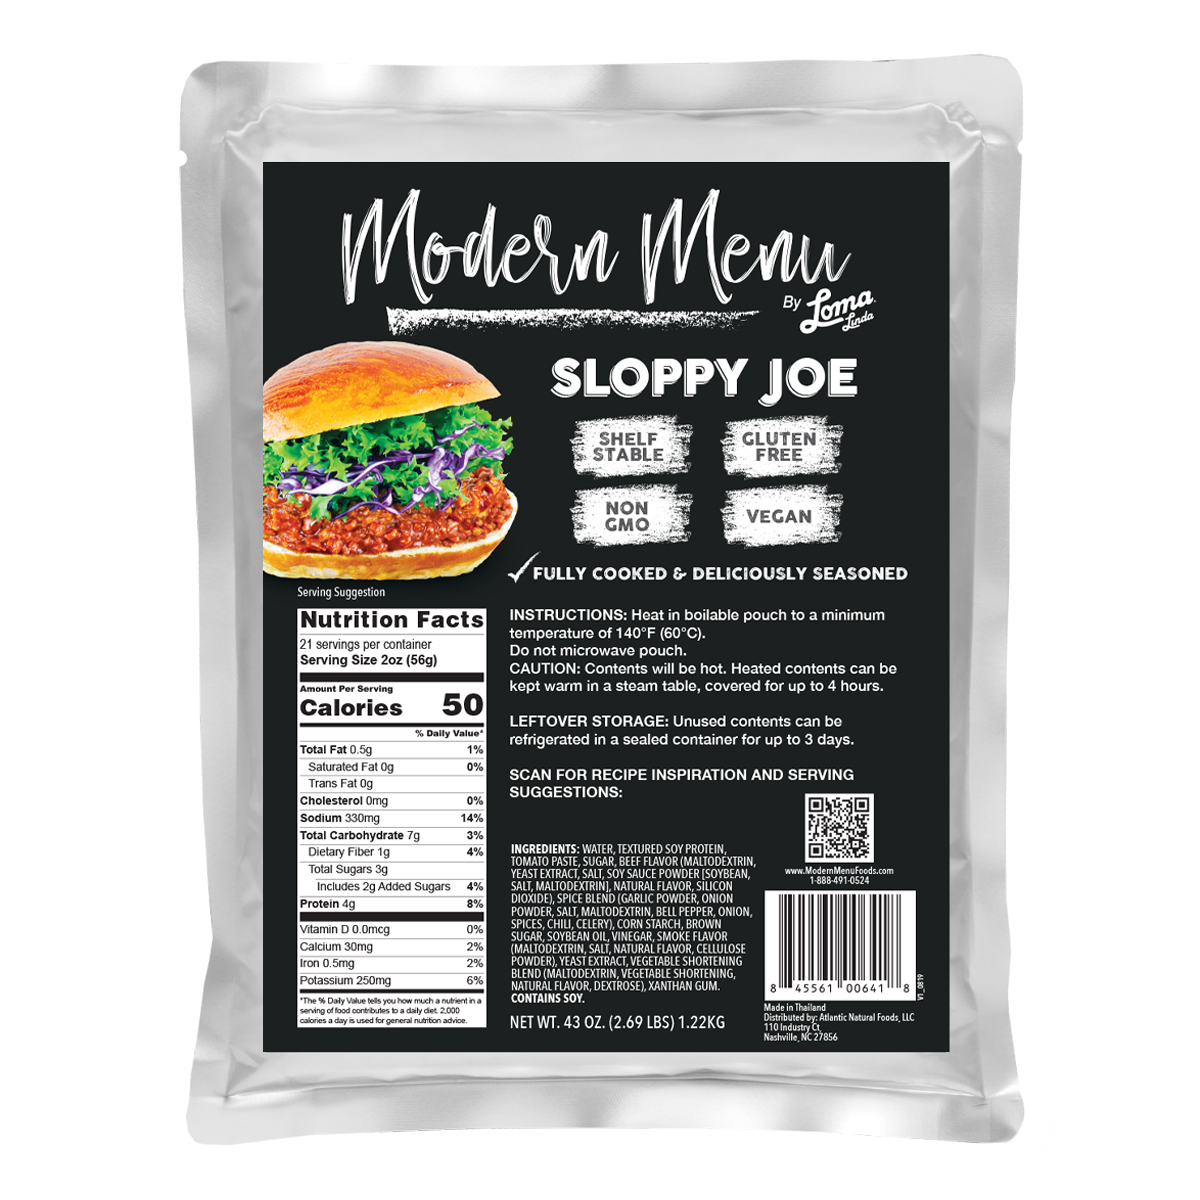 Modern Menu Sloppy Joe (Food Service) 6 units per case 43.0 oz